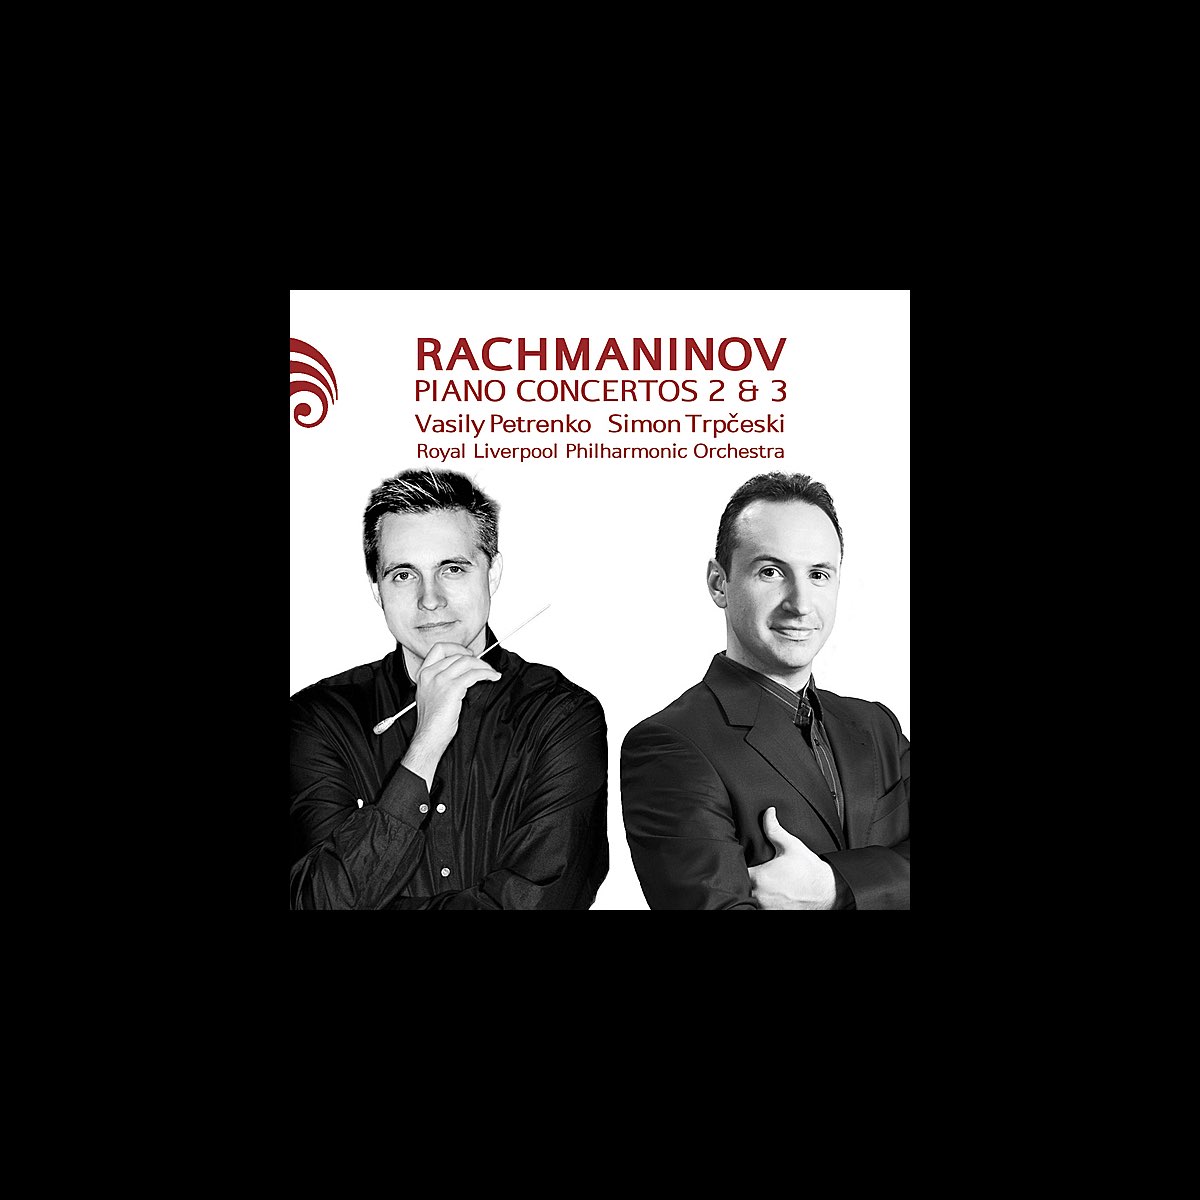 Rachmaninov: Piano Concertos 2 & 3 by Royal Liverpool Philharmonic  Orchestra, Vasily Petrenko & Simon Trpčeski on Apple Music